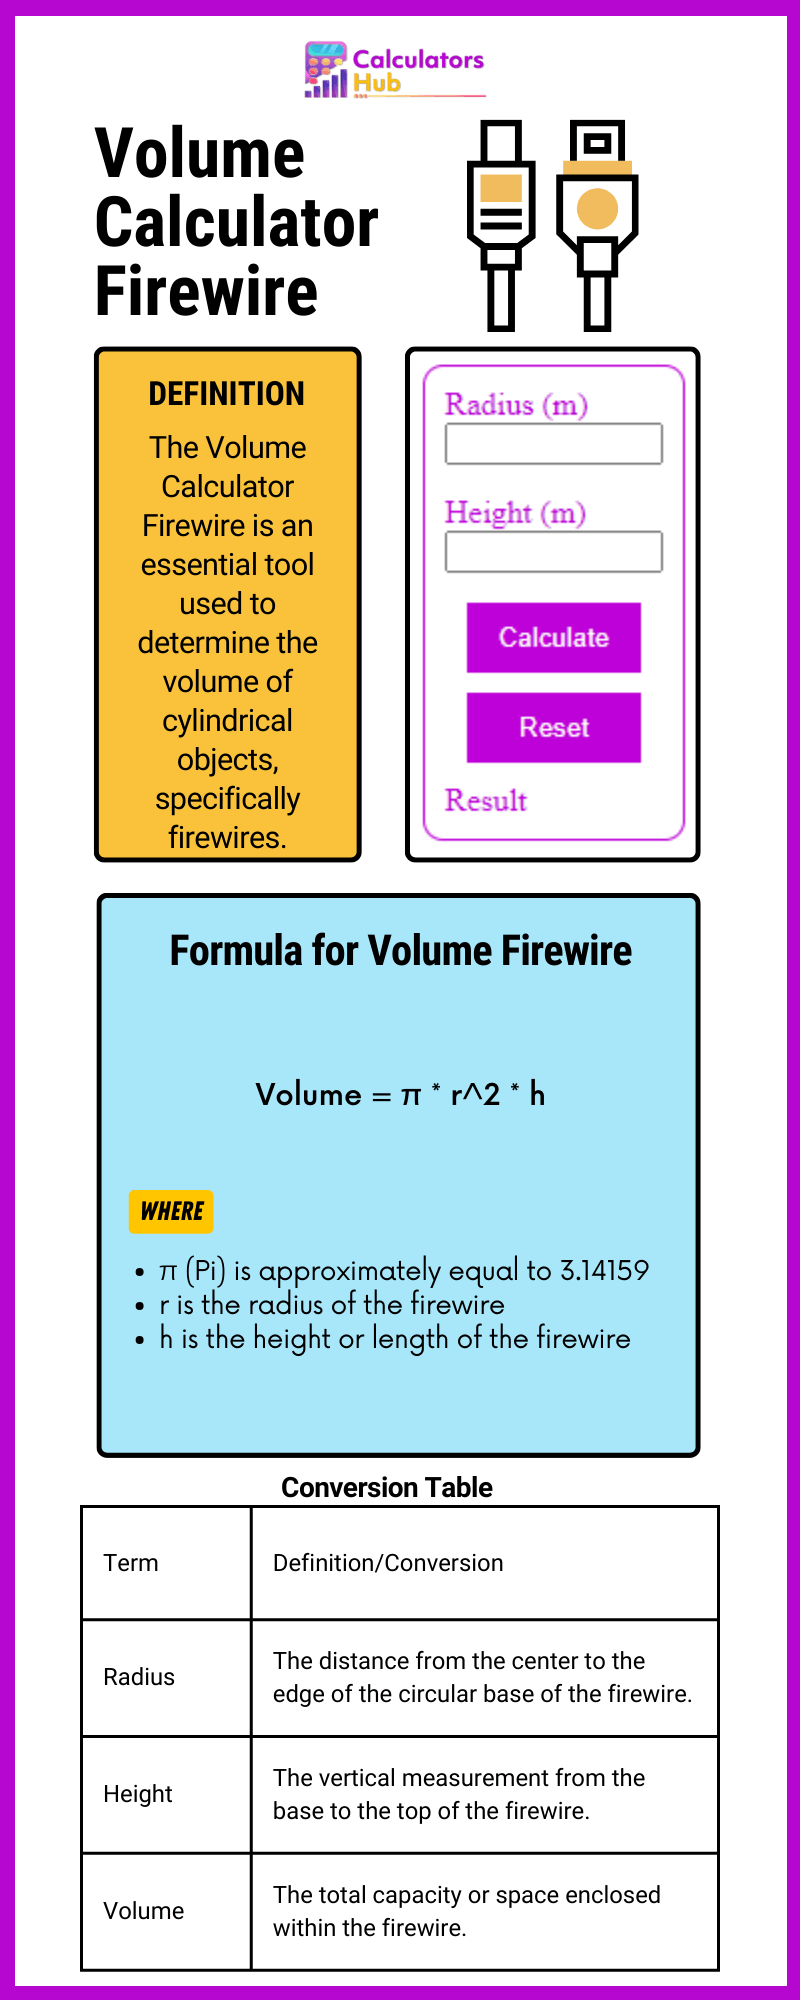 Volume Calculator Firewire